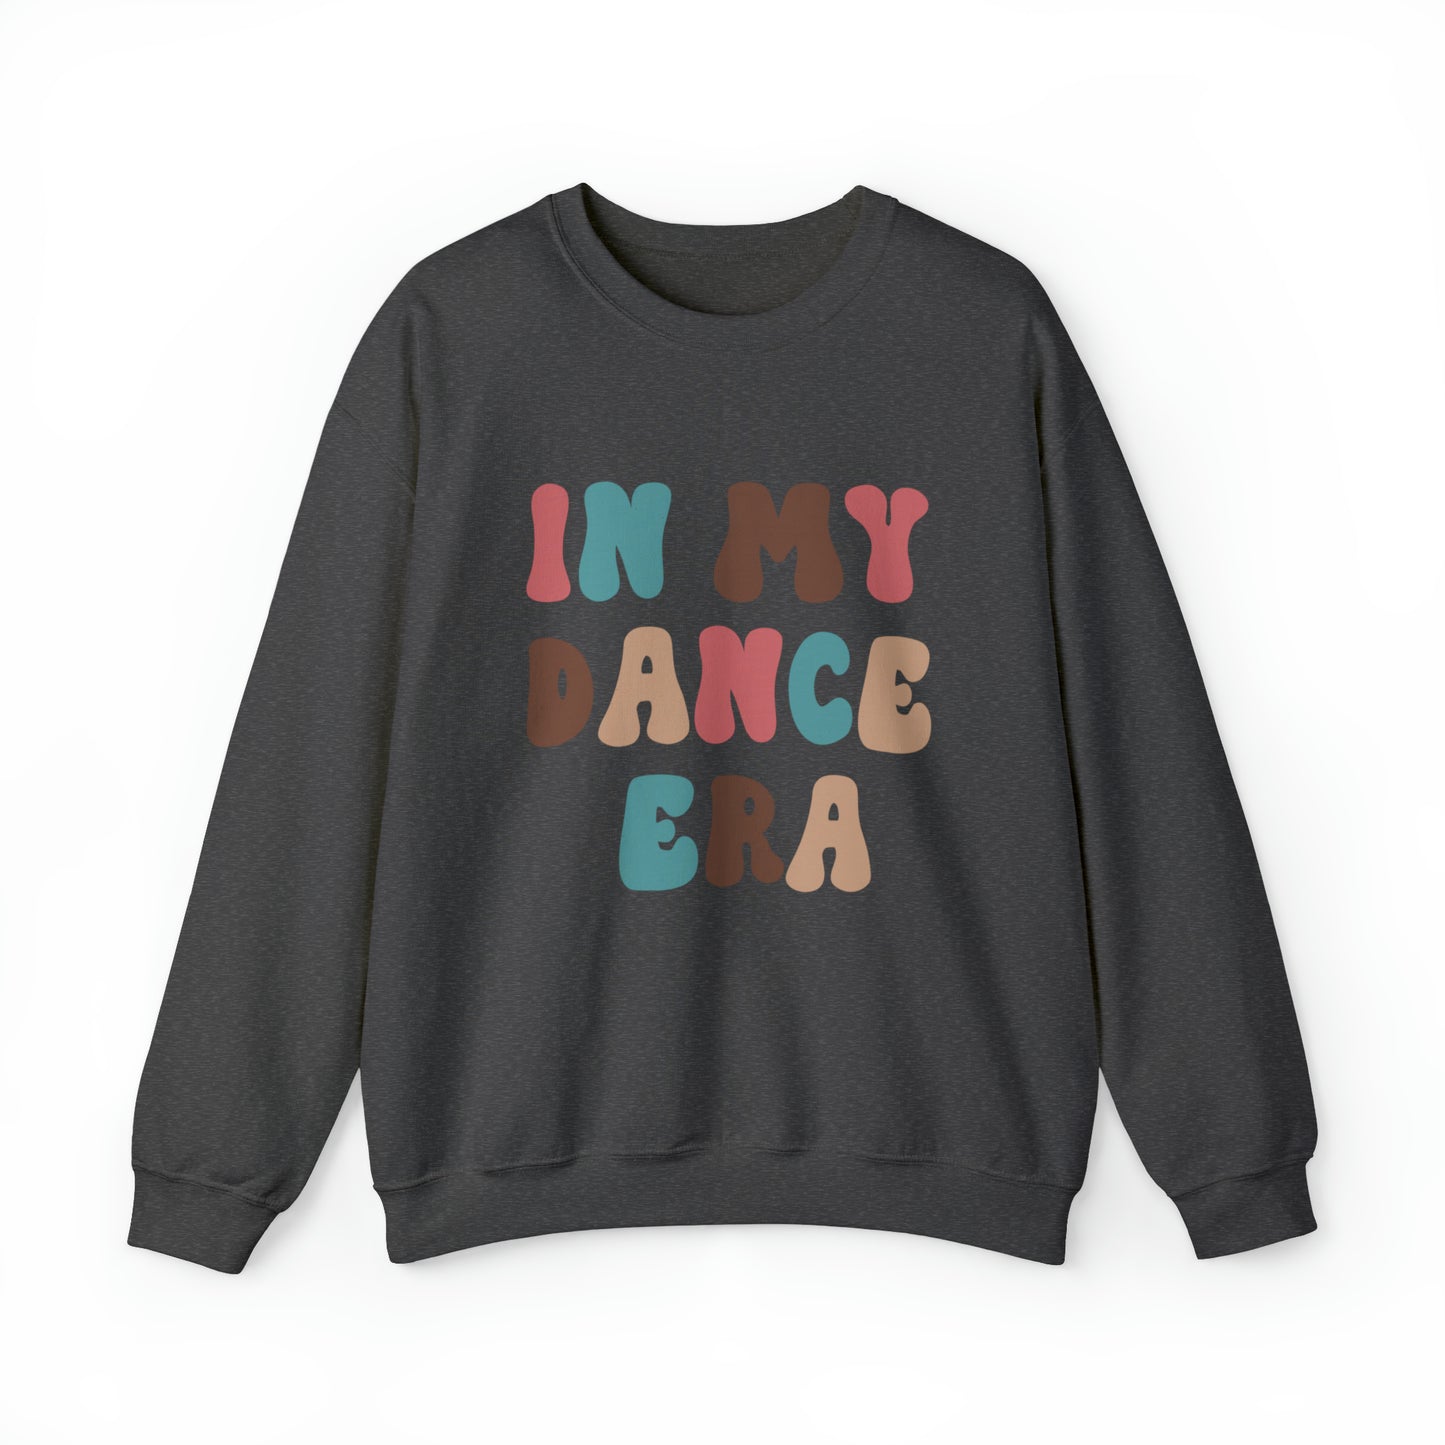 In My Dance Era Crewneck Sweatshirt